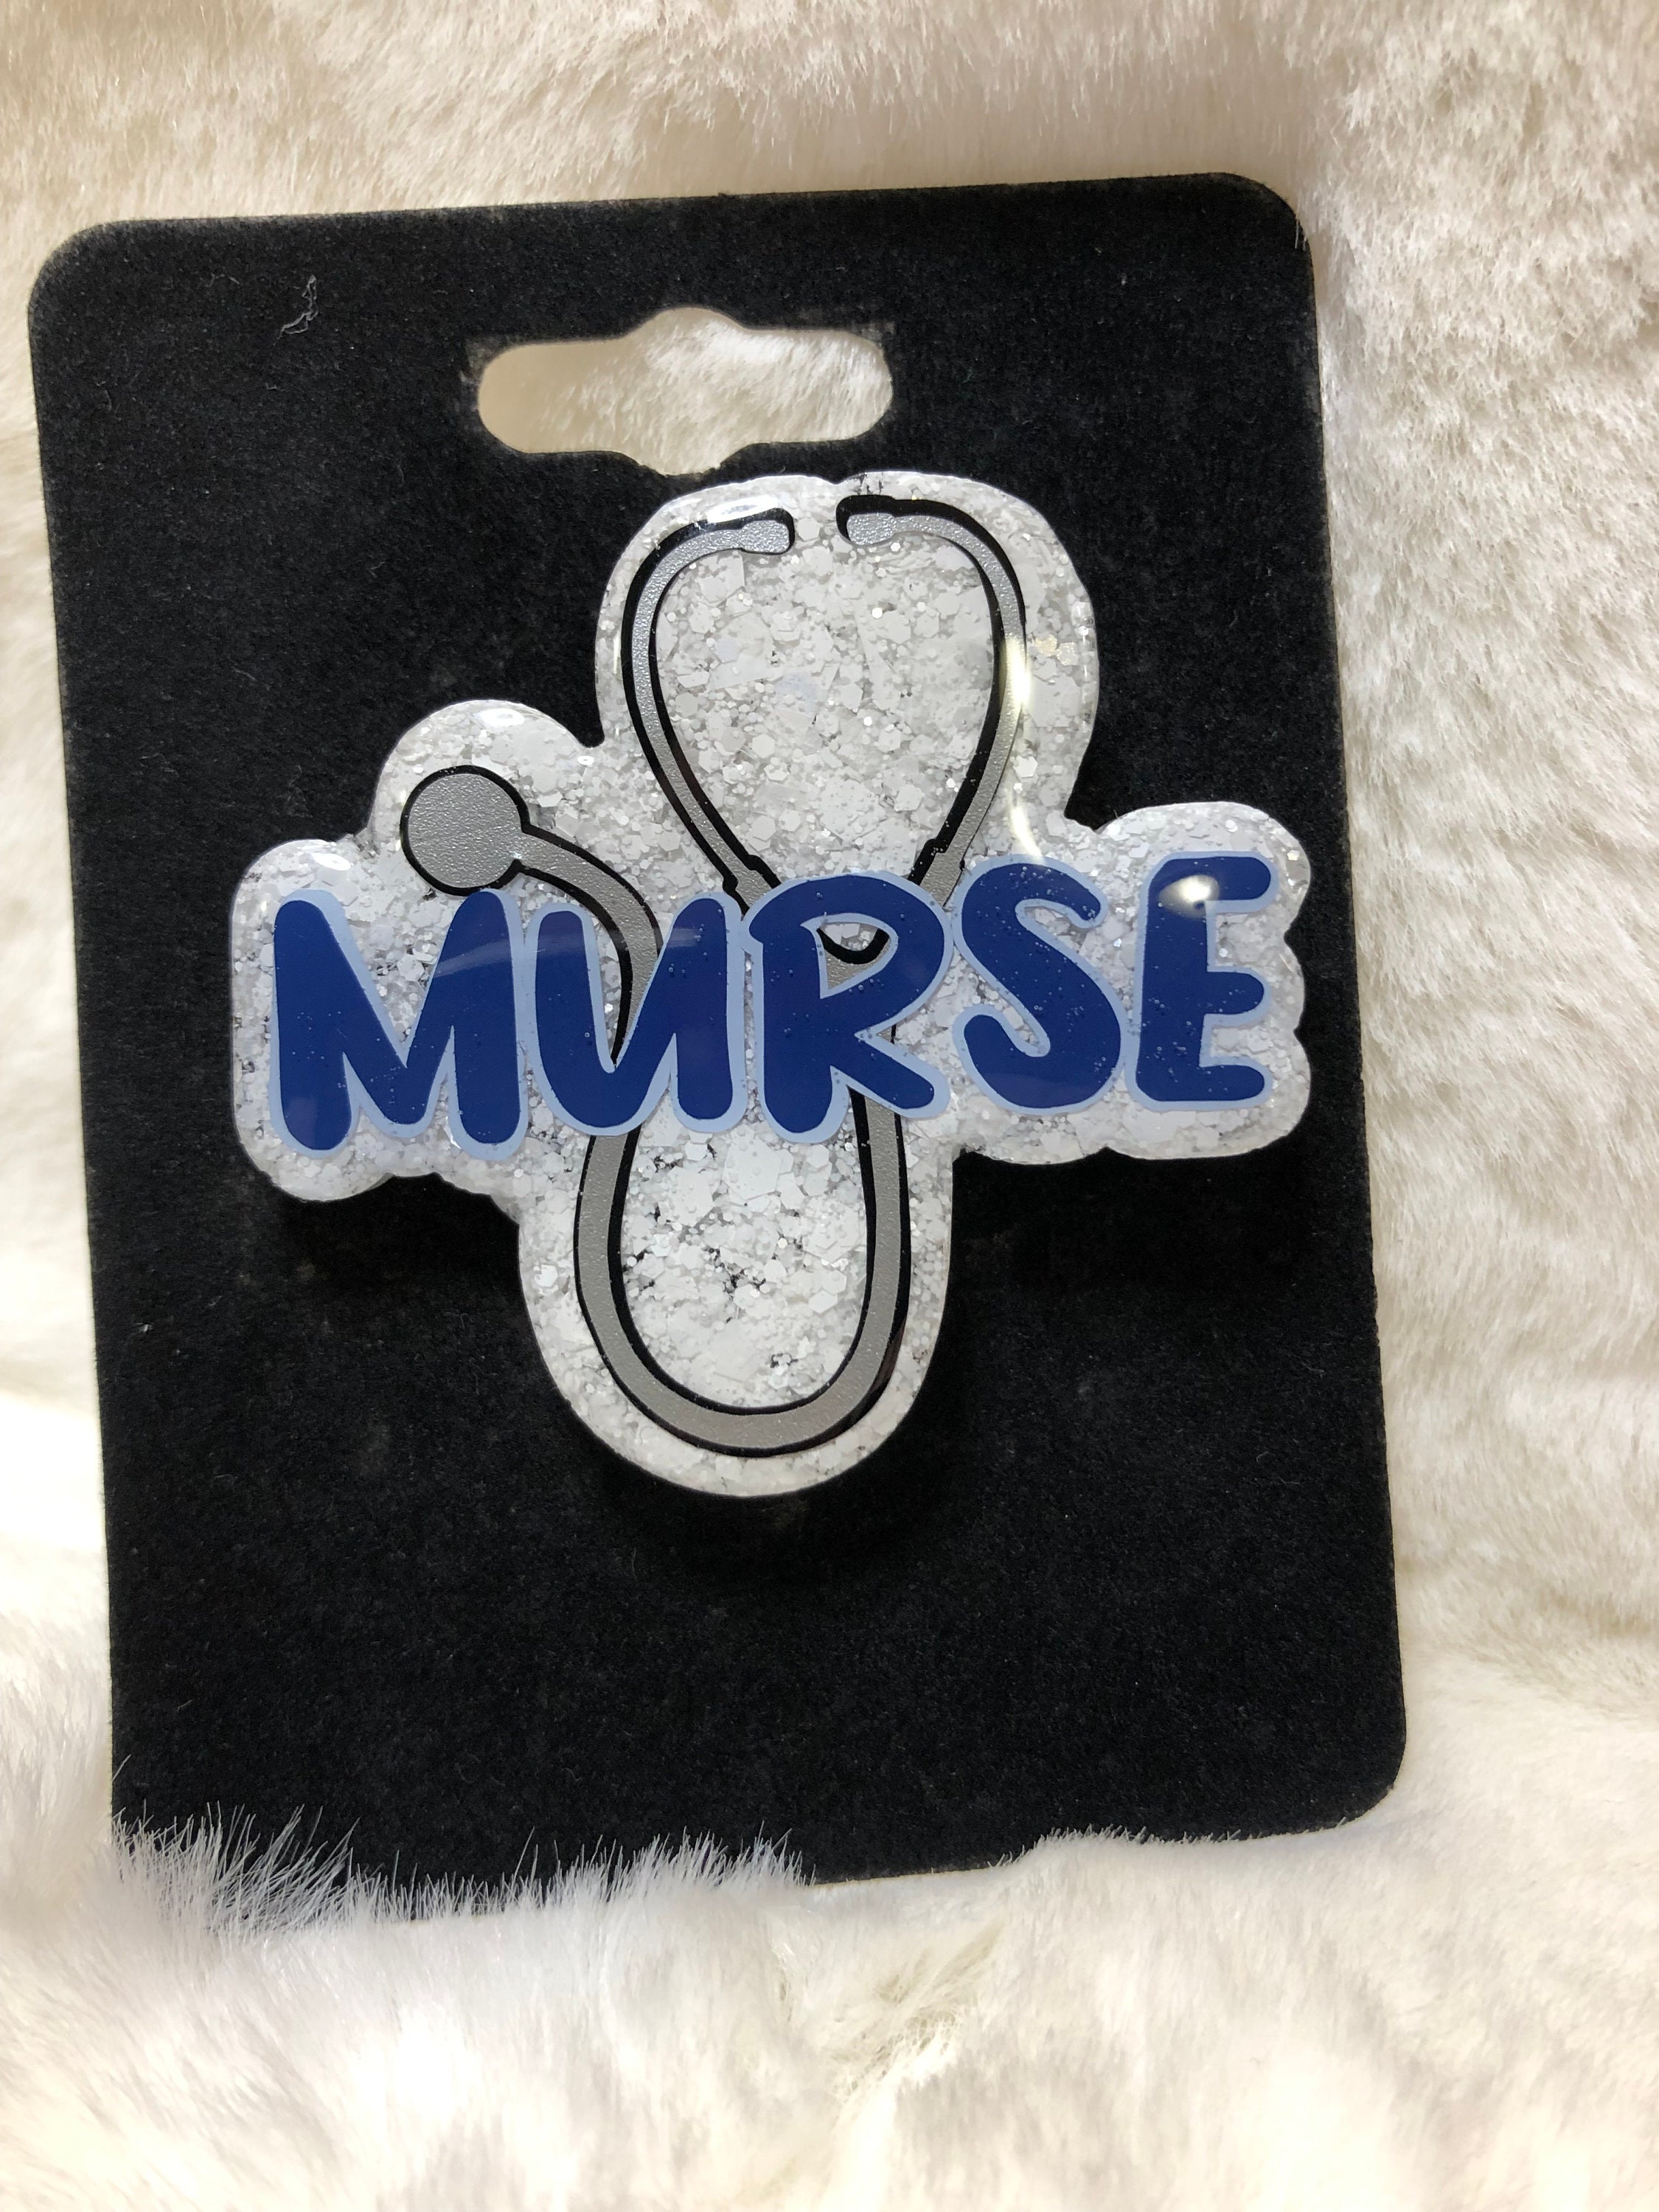 Murse ID Holder, male Nurse Badge ID Reel, Hospital Badge Topper